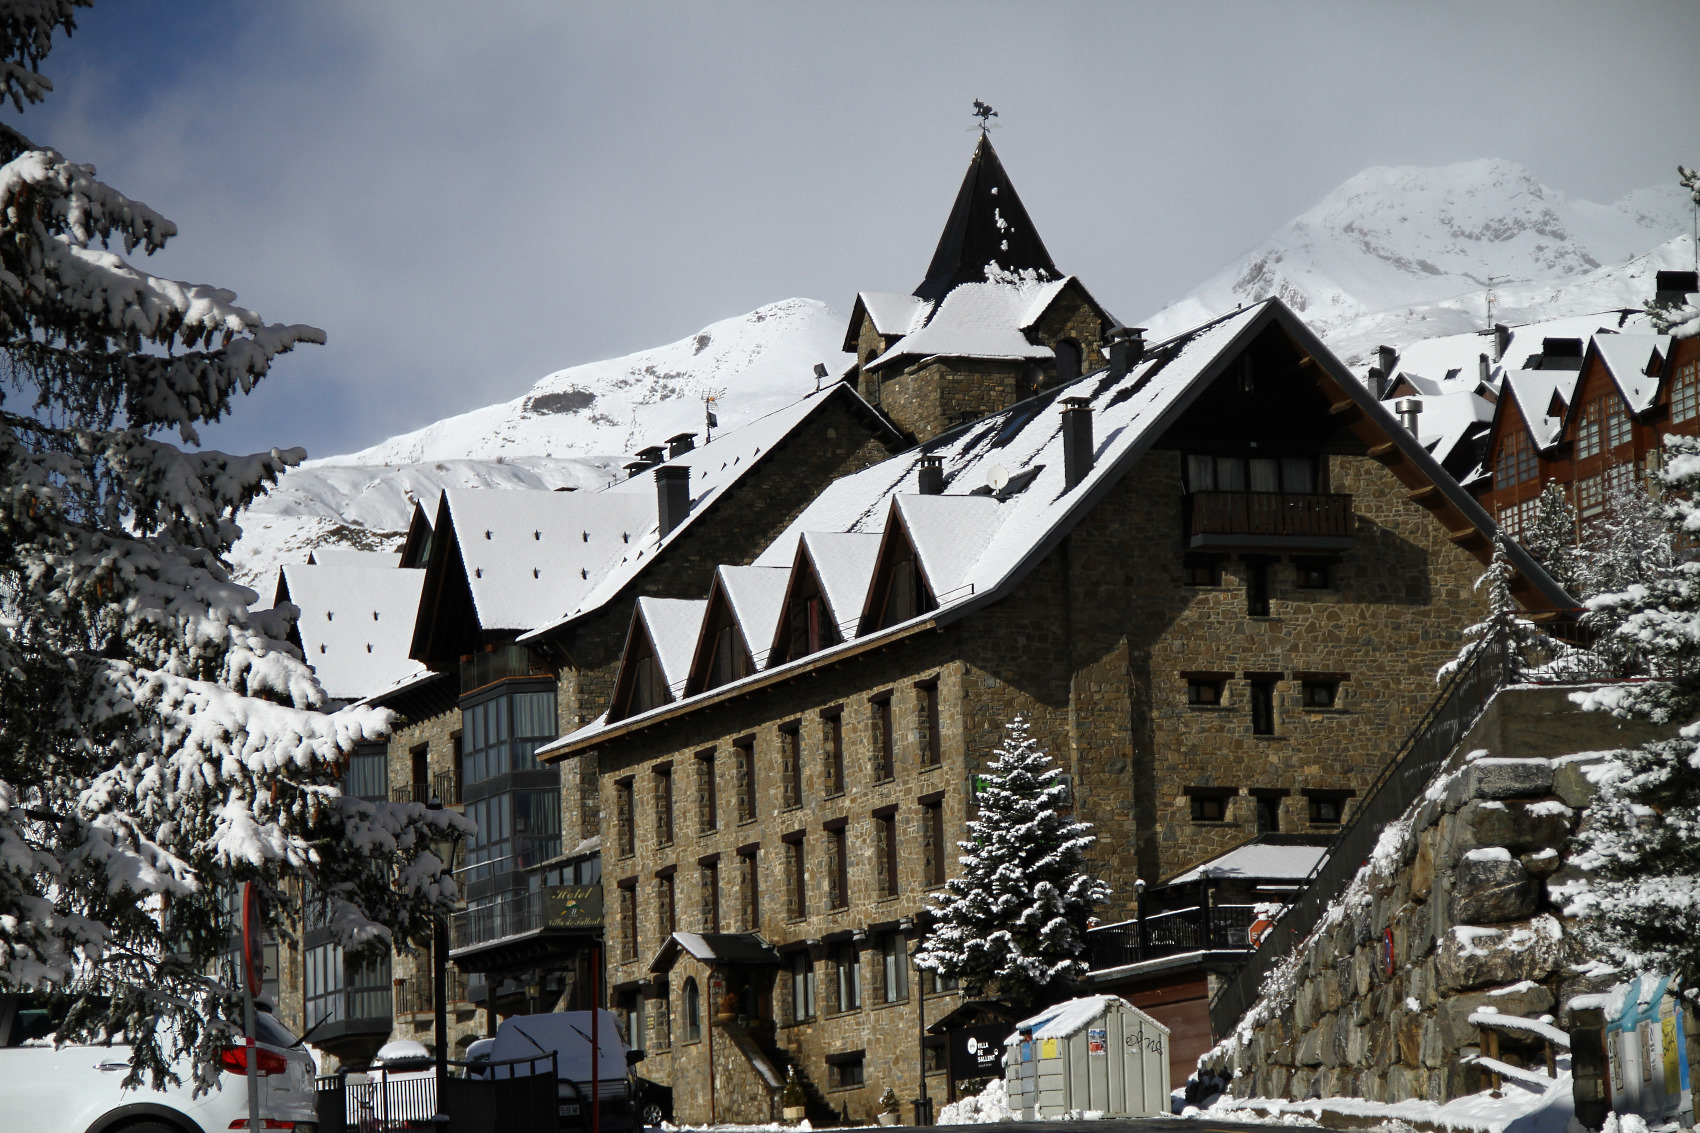 Hoteles Villa de Sallent y Edelweiss: 2 grandes opciones para conocer la nieve de Aramón